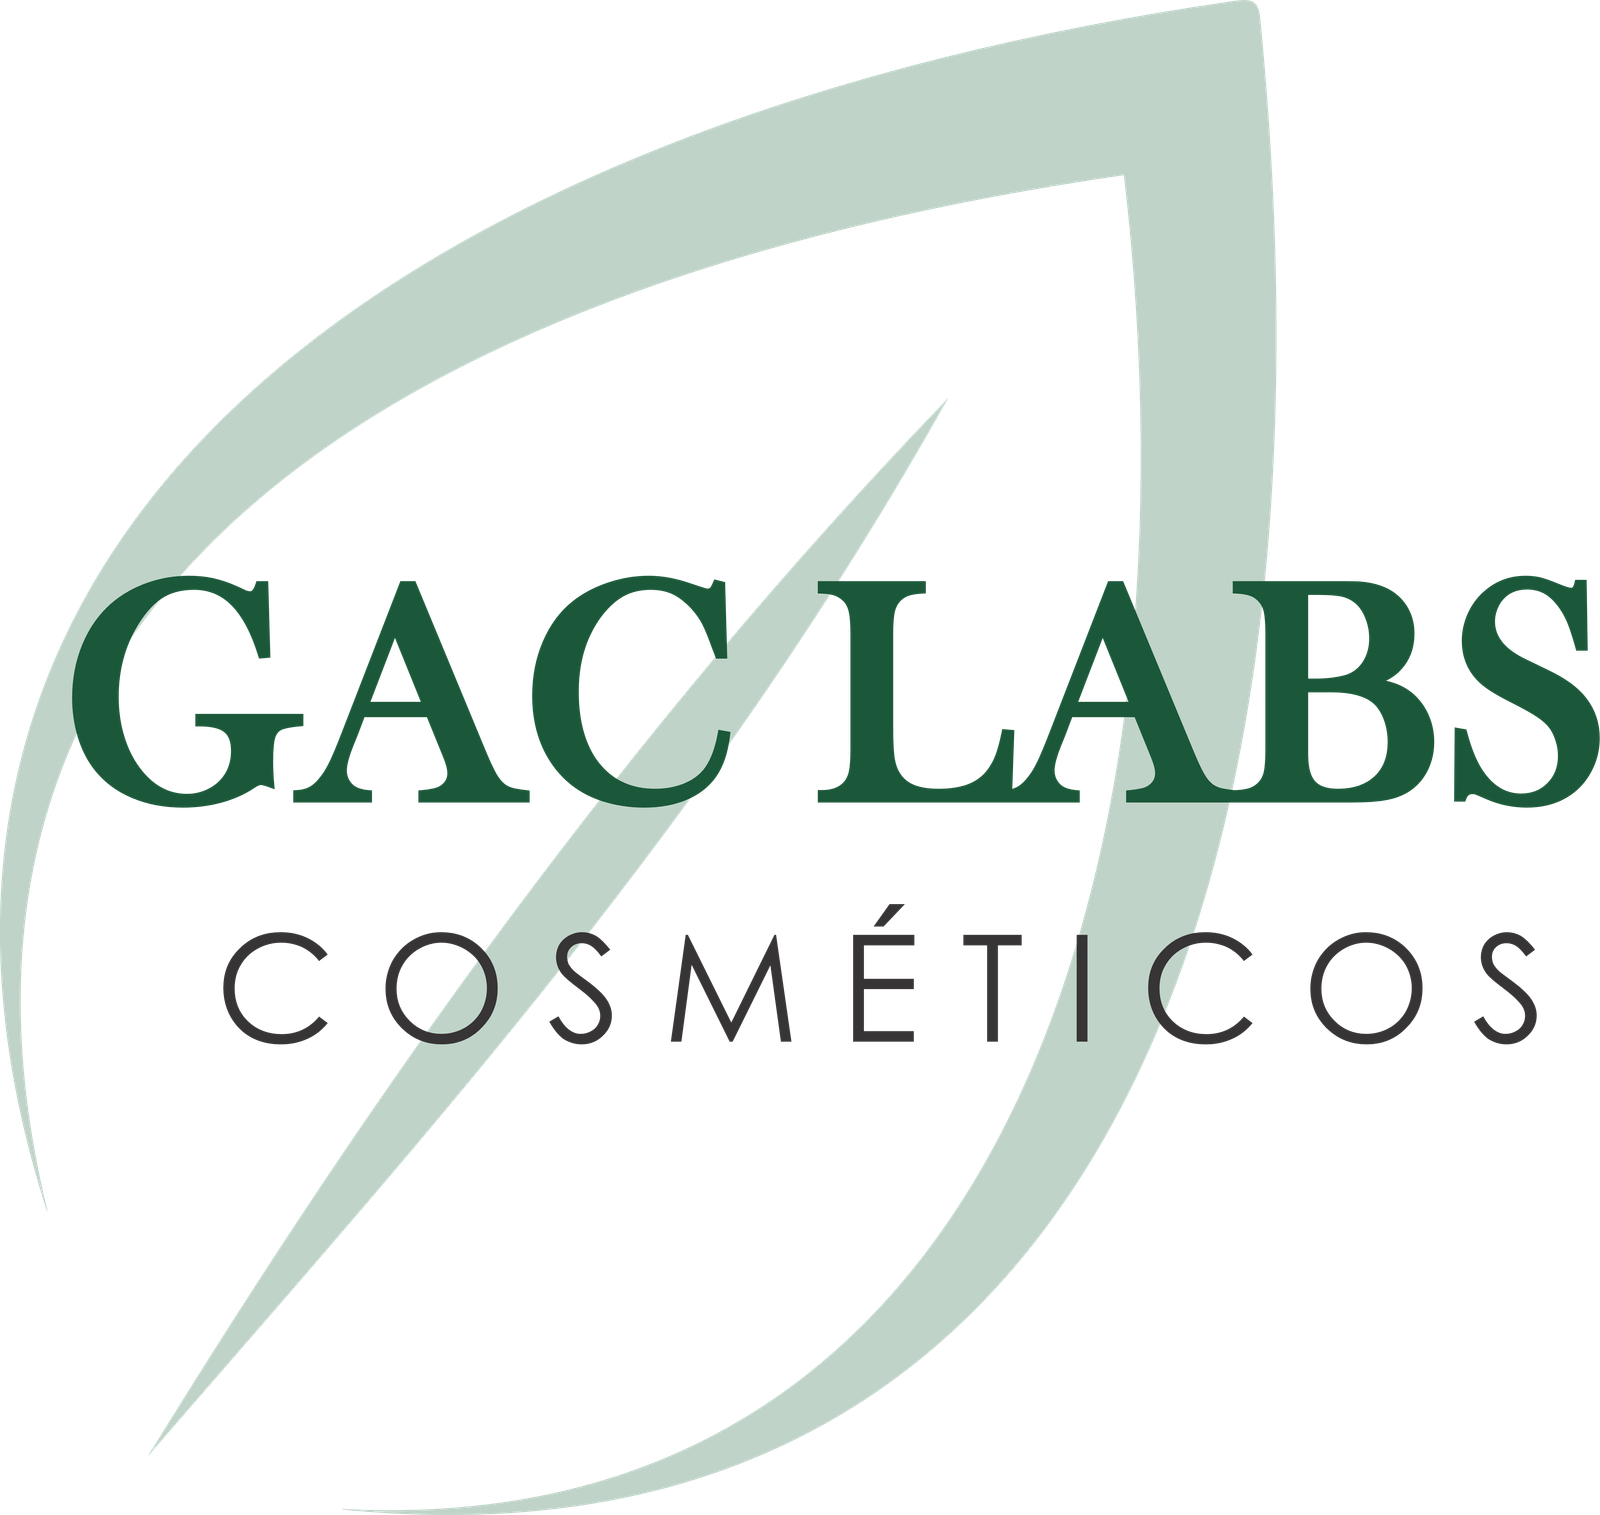 GAC Labs